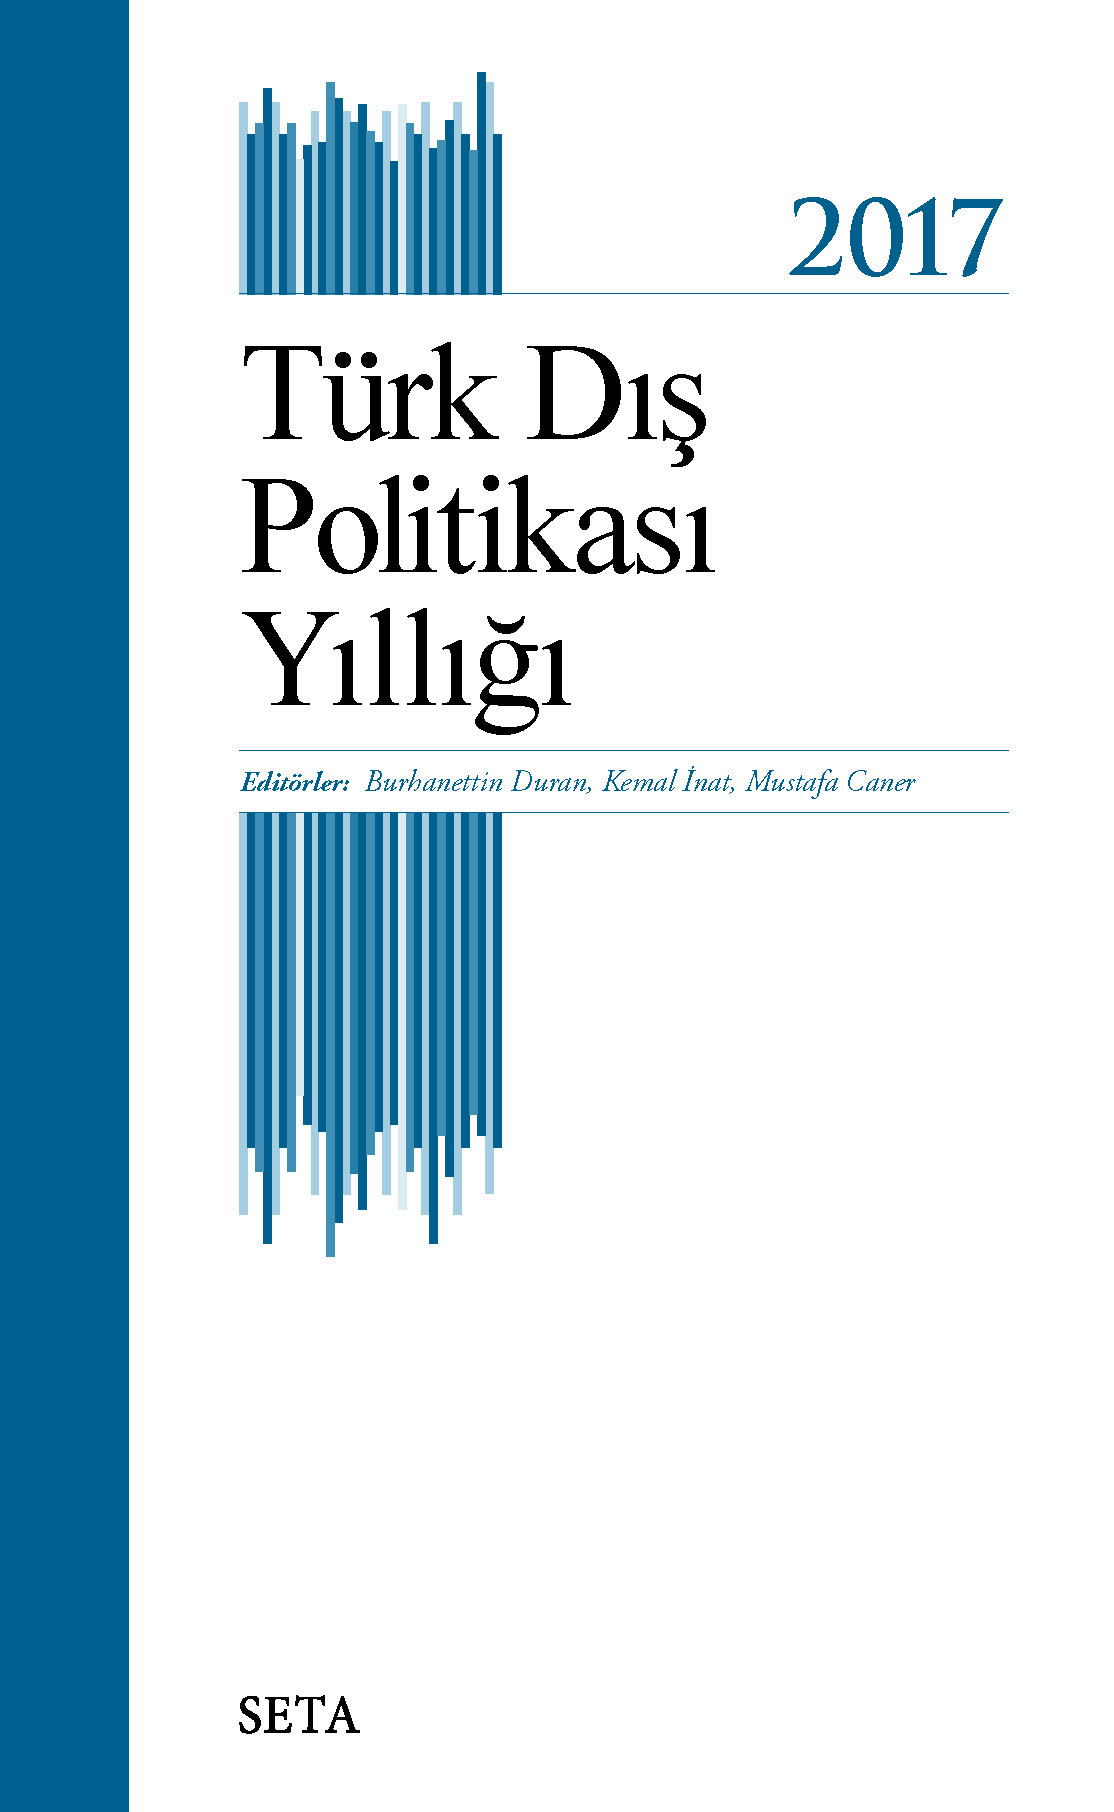 turk dis politikasi yilligi